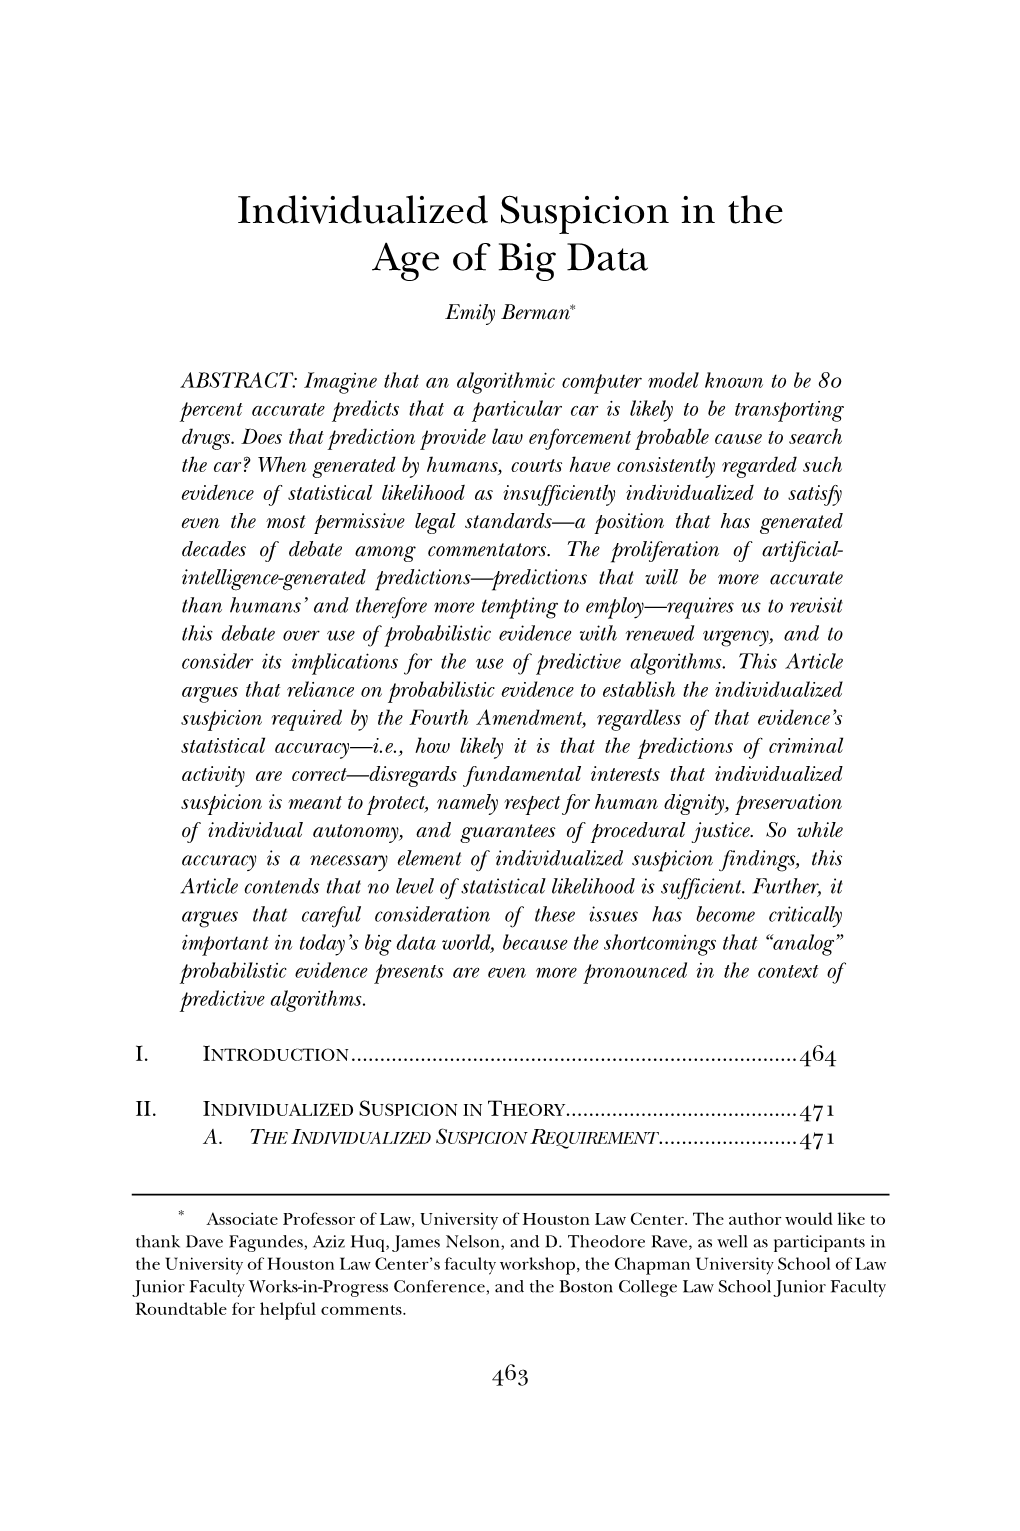 Individualized Suspicion in the Age of Big Data